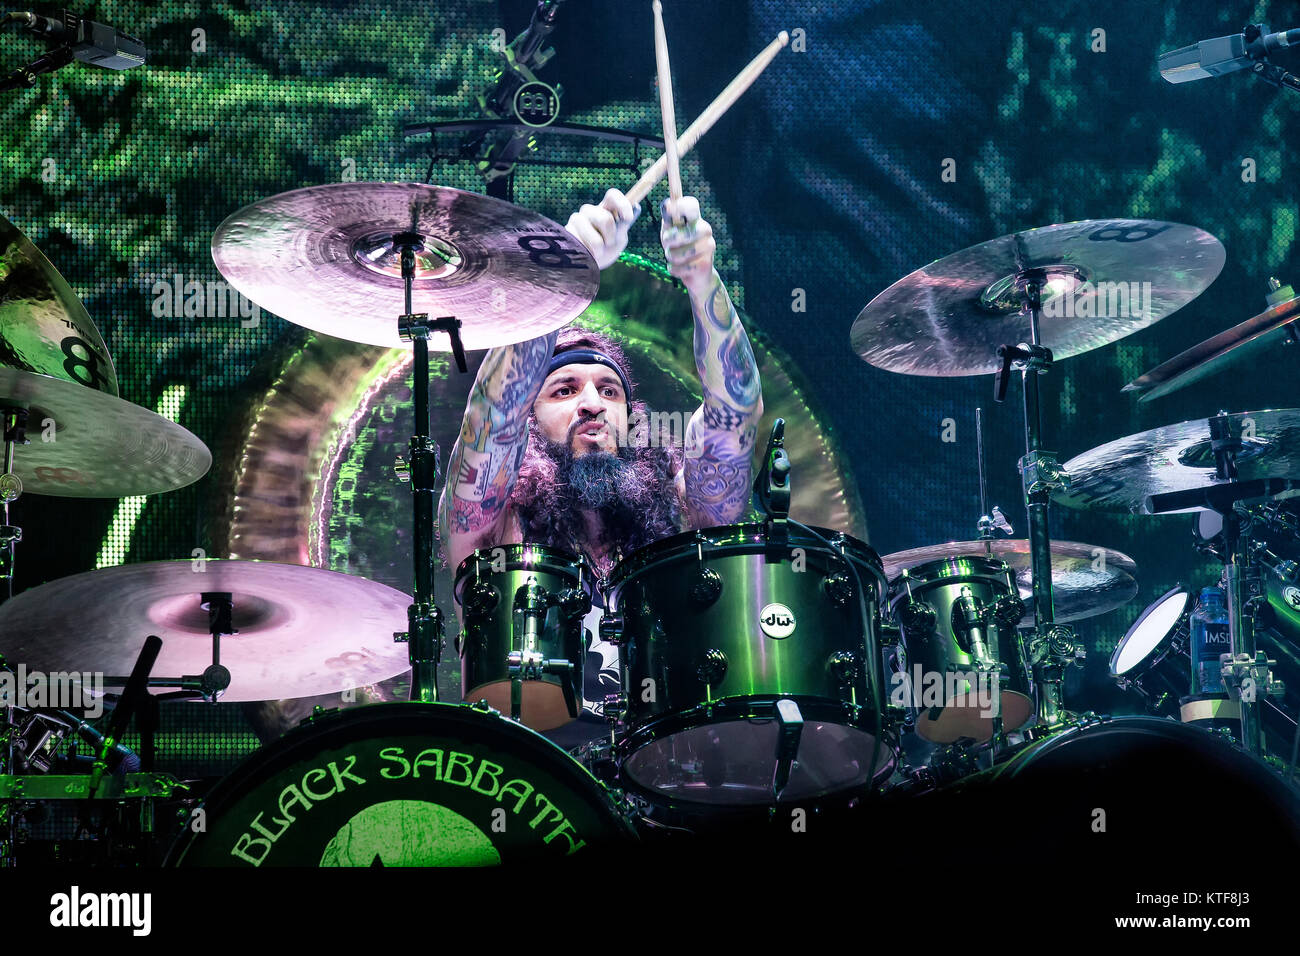 Le groupe de rock anglais Black Sabbath effectue un concert live à Telenor Arena d'Oslo. Musicien Tommy Clufetos ici à la batterie est vu sur scène. La Norvège, 24/11 2013. Banque D'Images